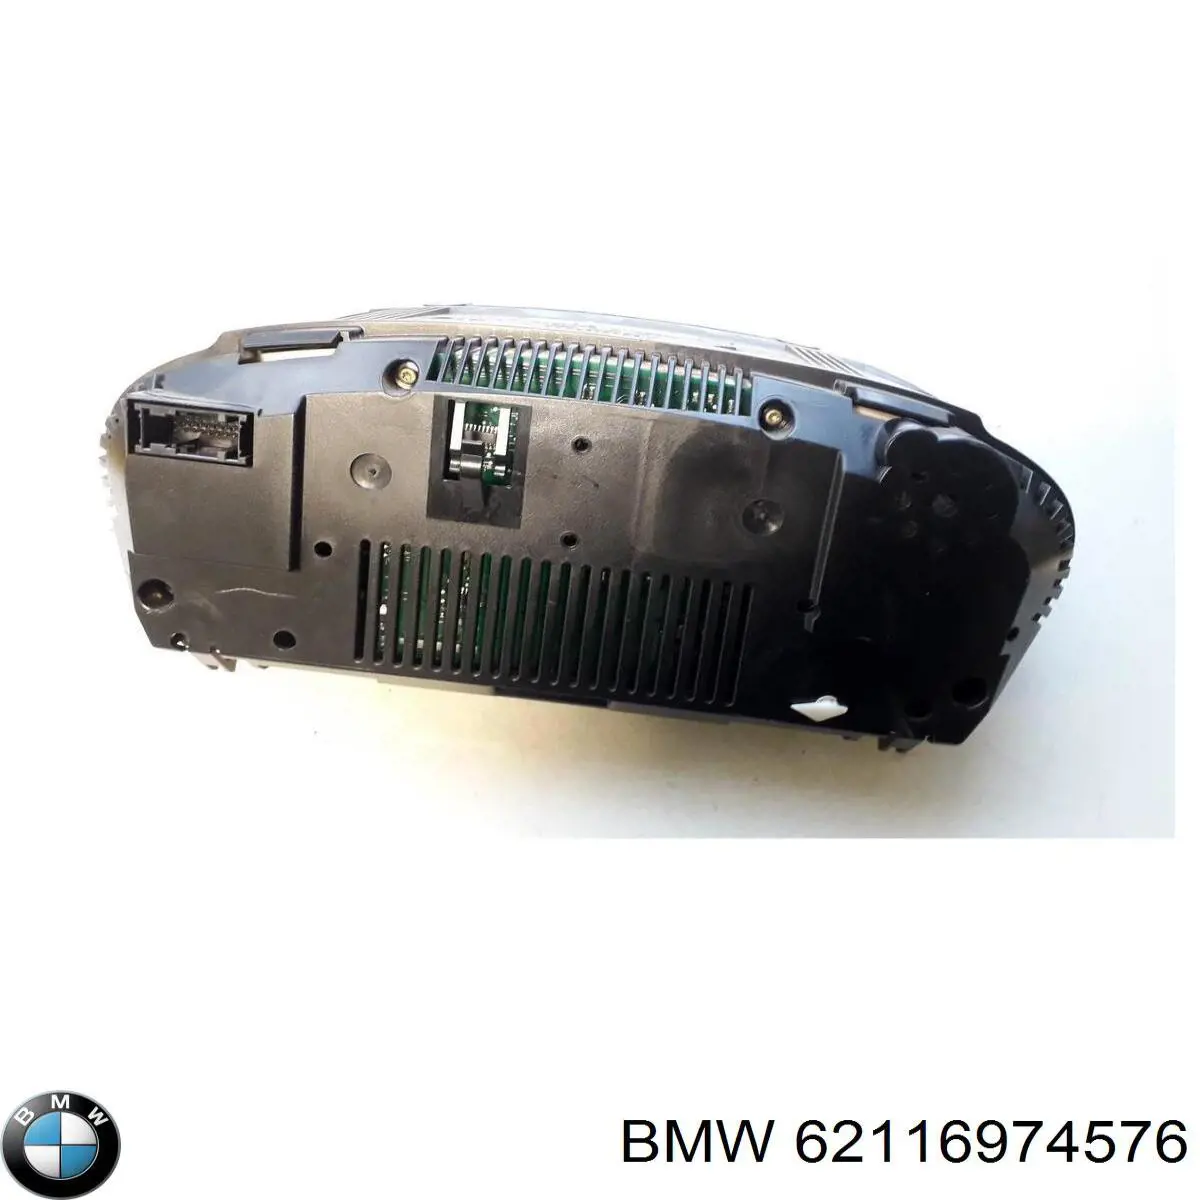 62109194889 BMW tablero de instrumentos (panel de instrumentos)